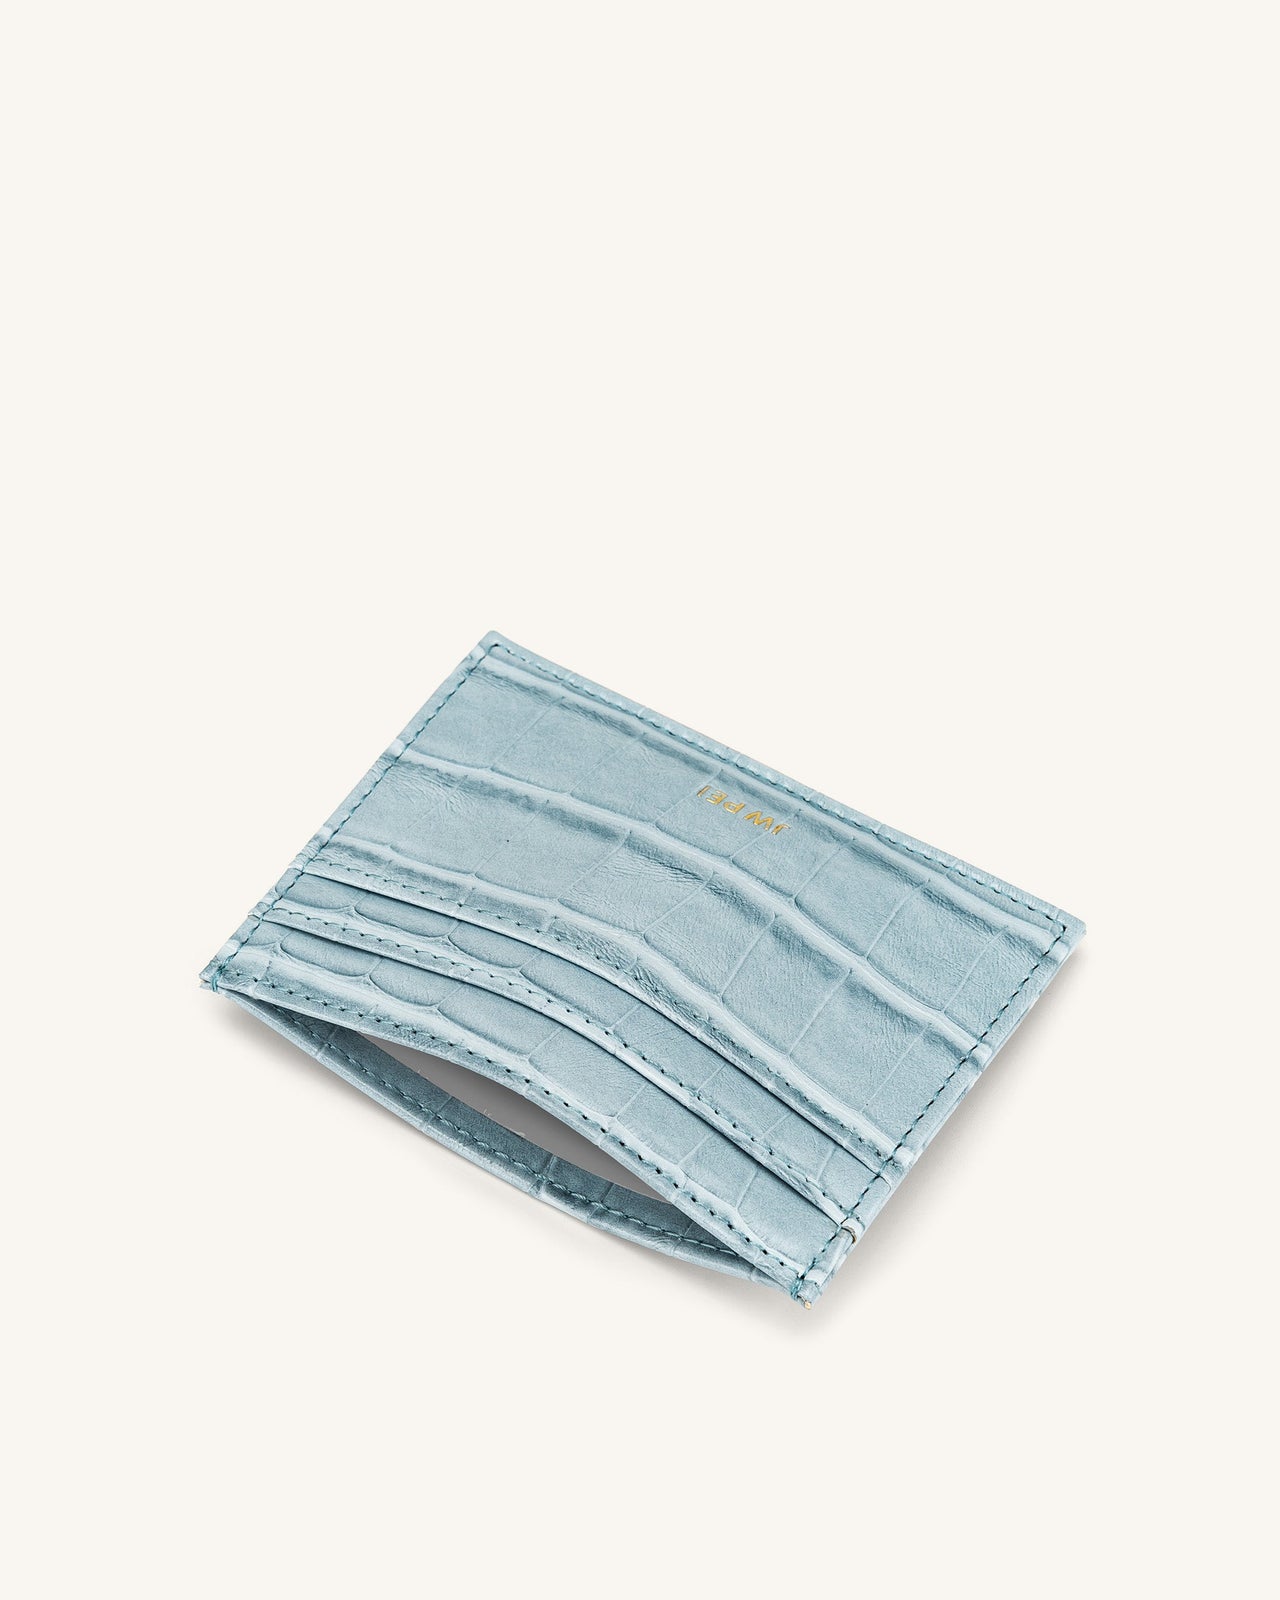 Porte-cartes - Glace Bleu Effect Croco